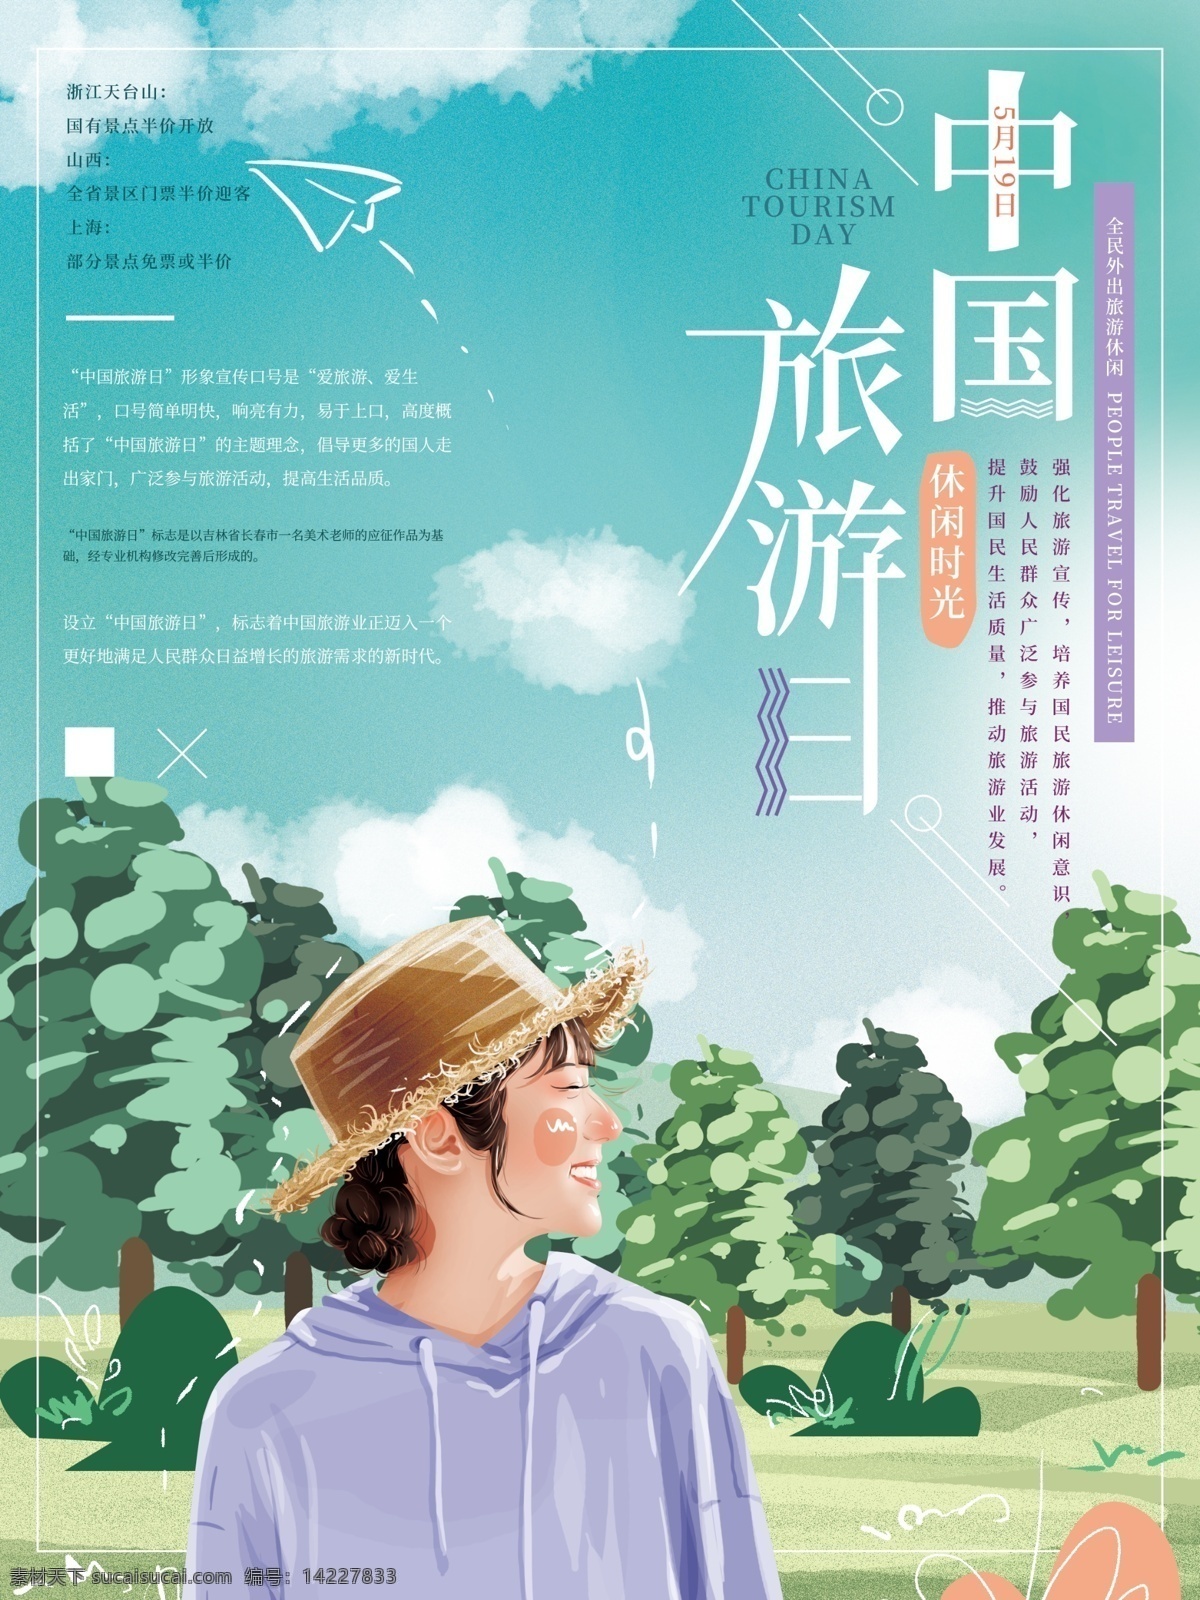 原创 手绘 中国旅游 日 清新 海报 女孩 风景 自然 旅行 蓝天 简约 节日 中国旅游日